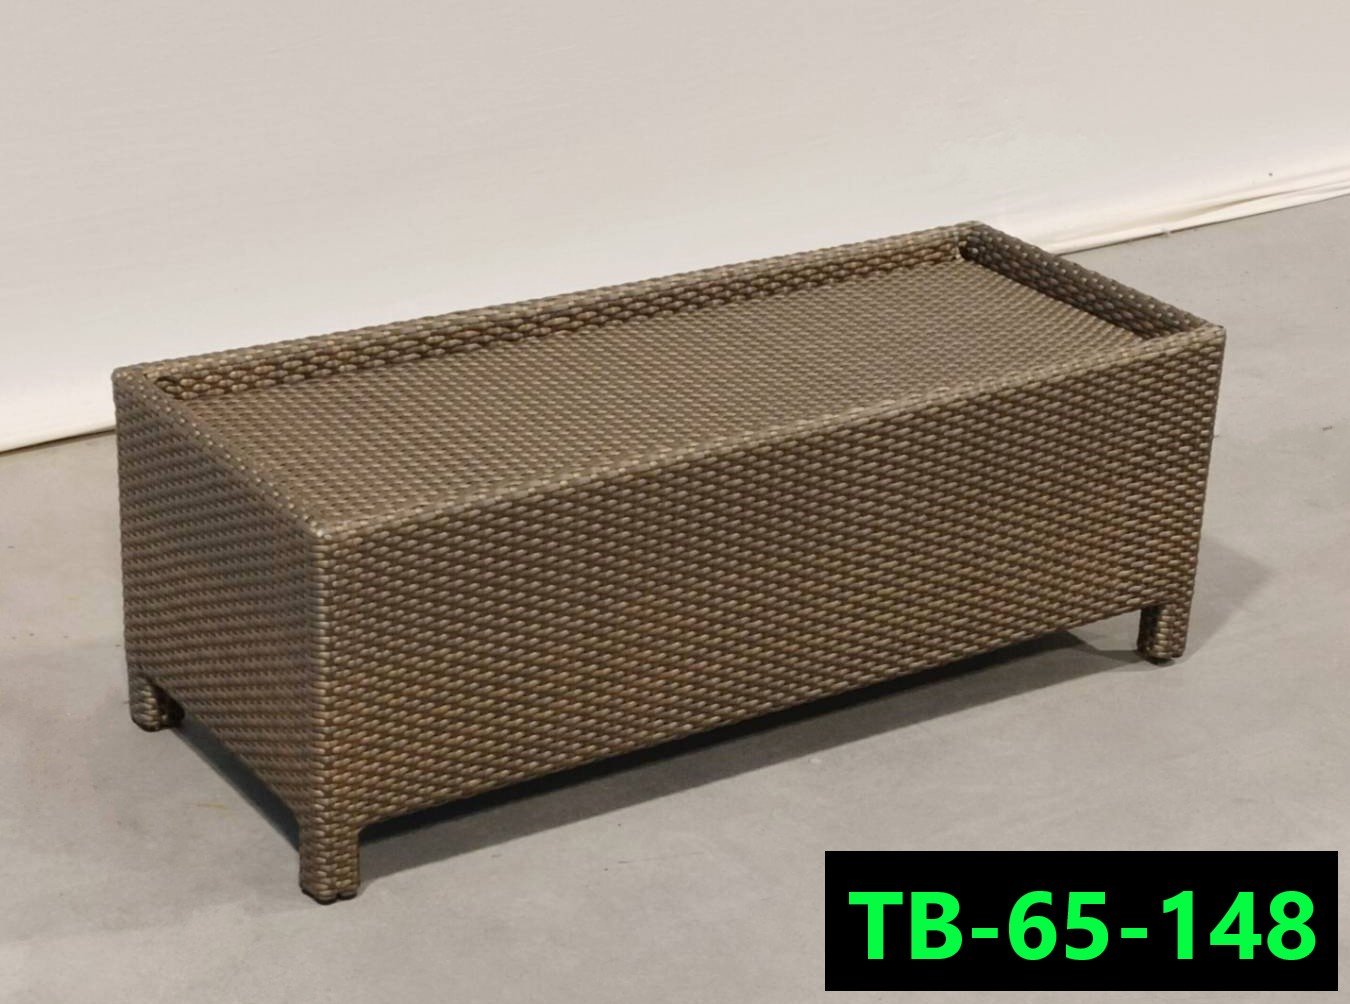 โต๊ะหวายเทียม รหัสสินค้า TB-65-148